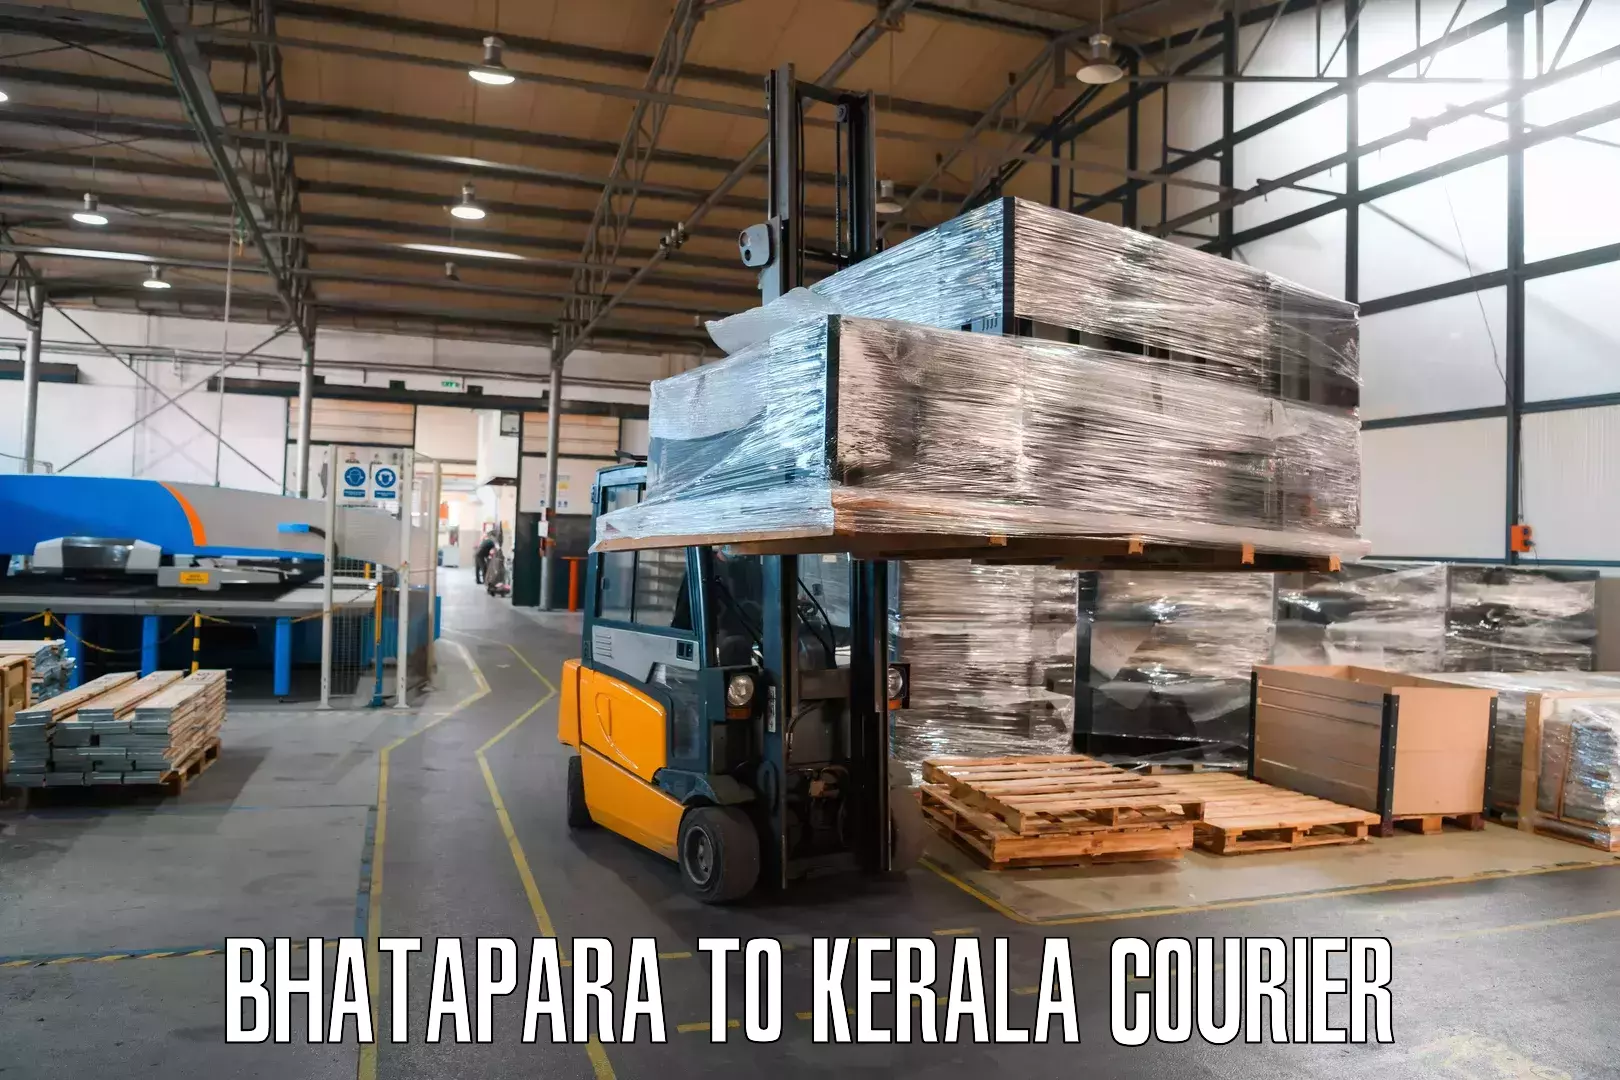 Local courier options Bhatapara to Guruvayur